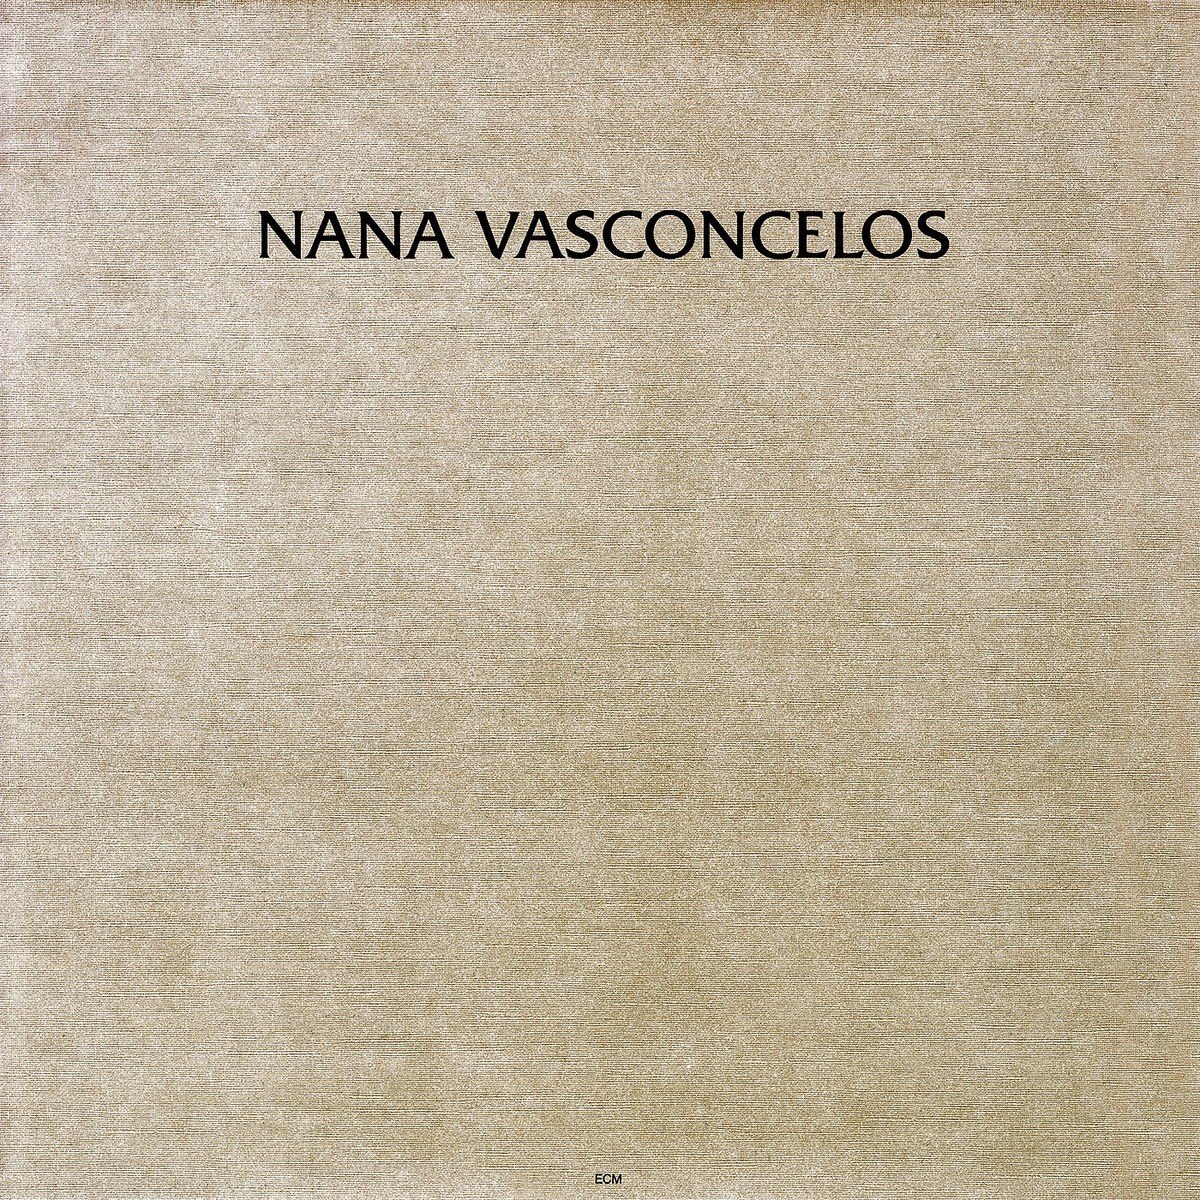 Nana Vasconcelos - Saudades (CD) - Nana Vasconcelos